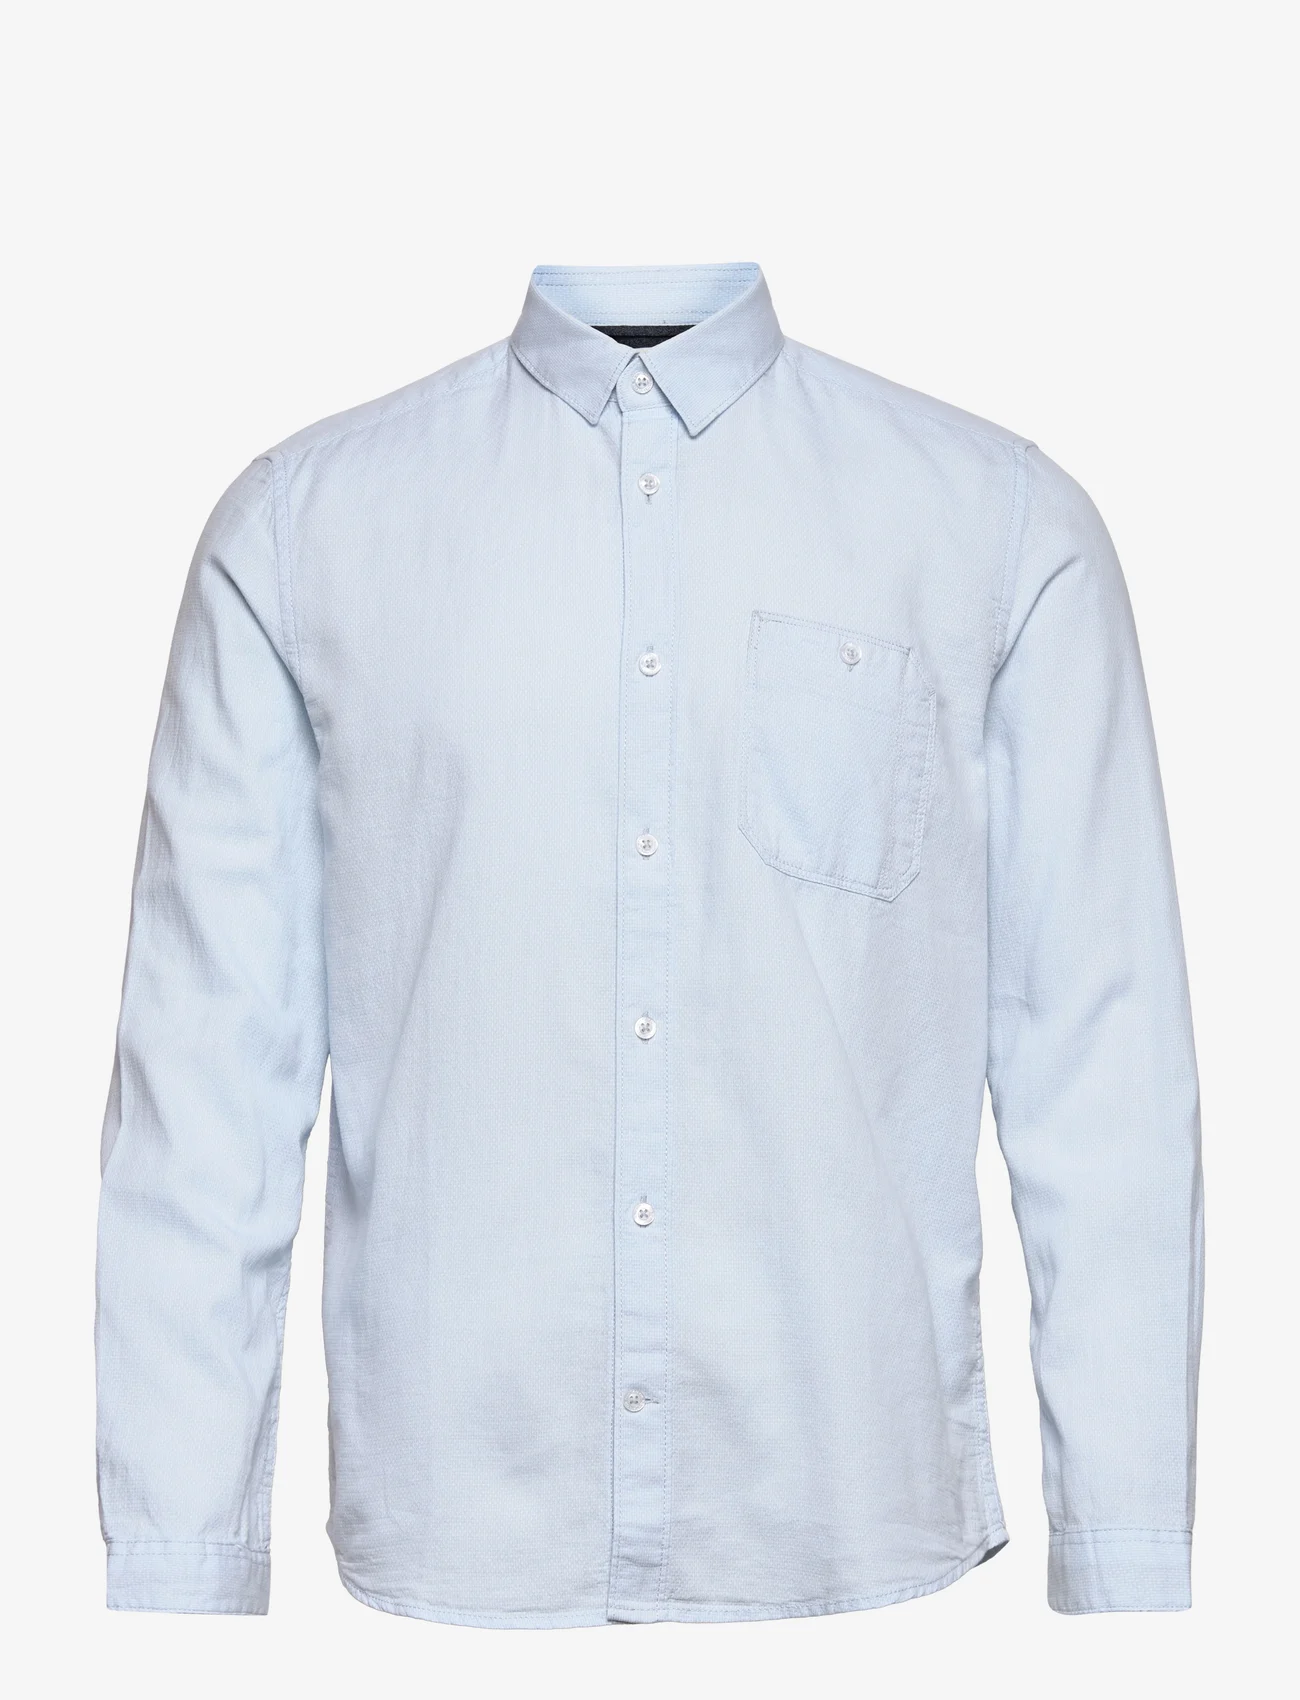 Tom Tailor - structured shirt - basic-hemden - light blue white structure - 0